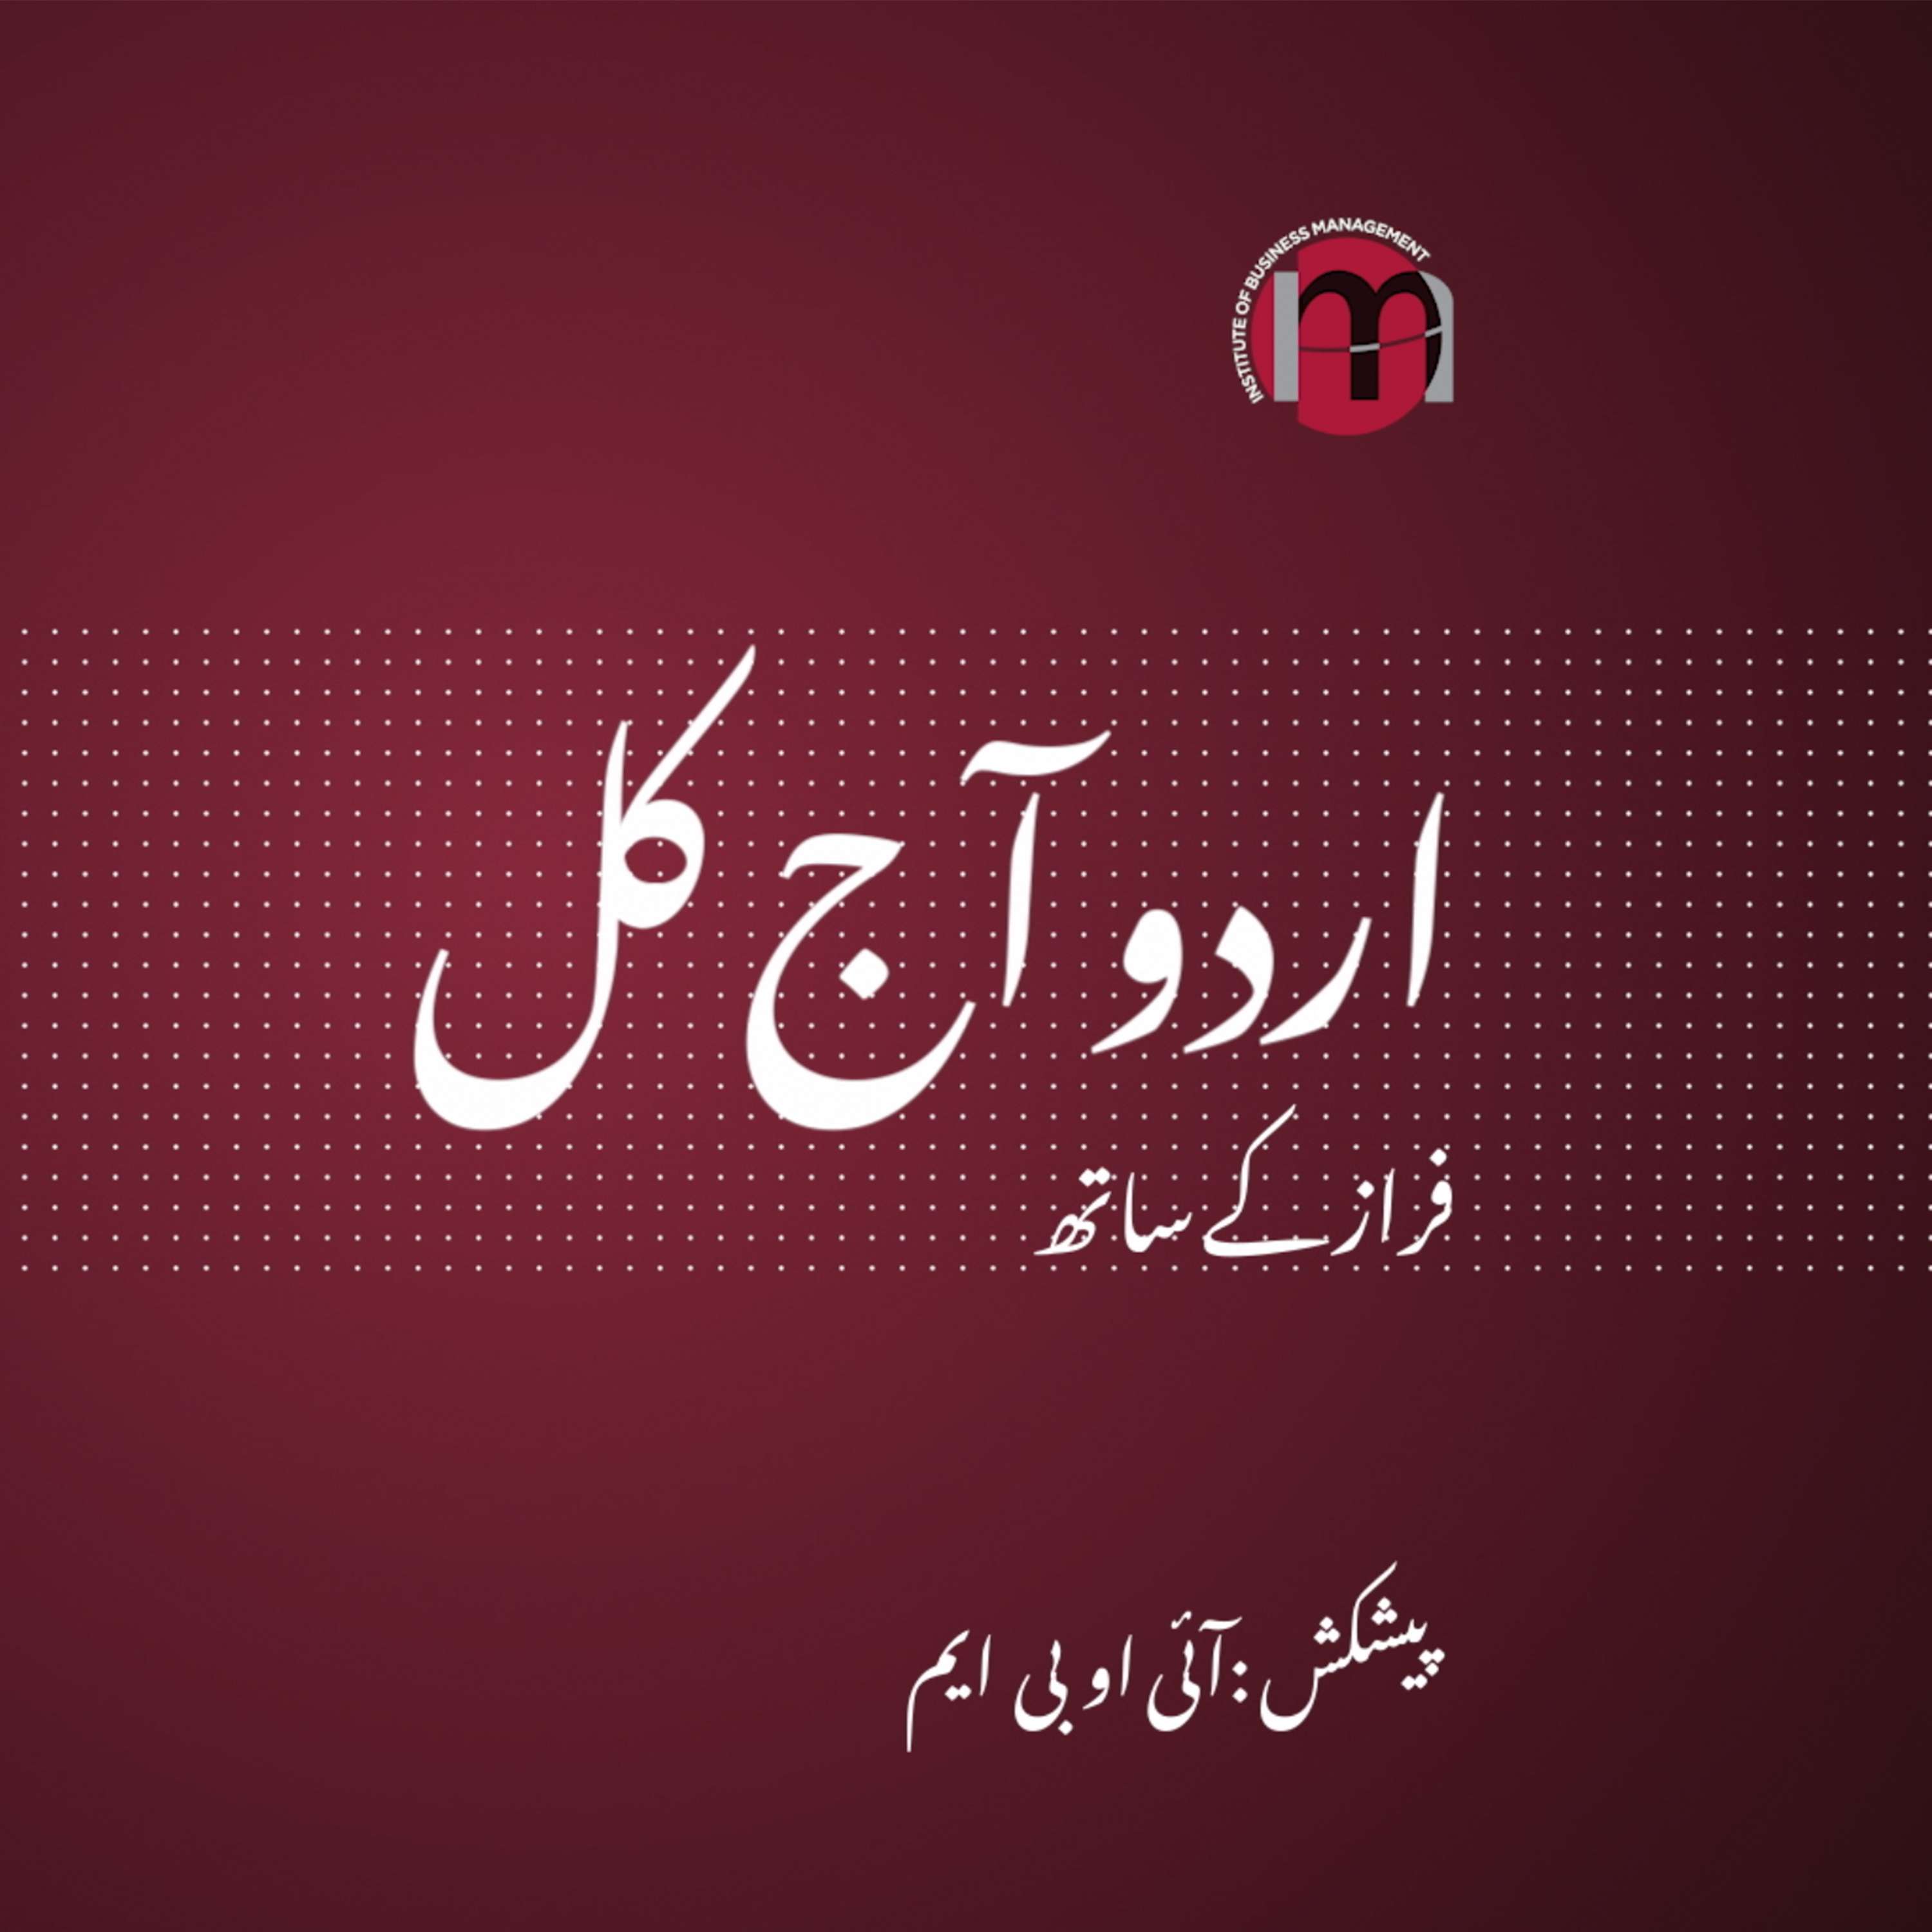 Iqbal Khursheed Sahab | Challenge of only speaking in Urdu